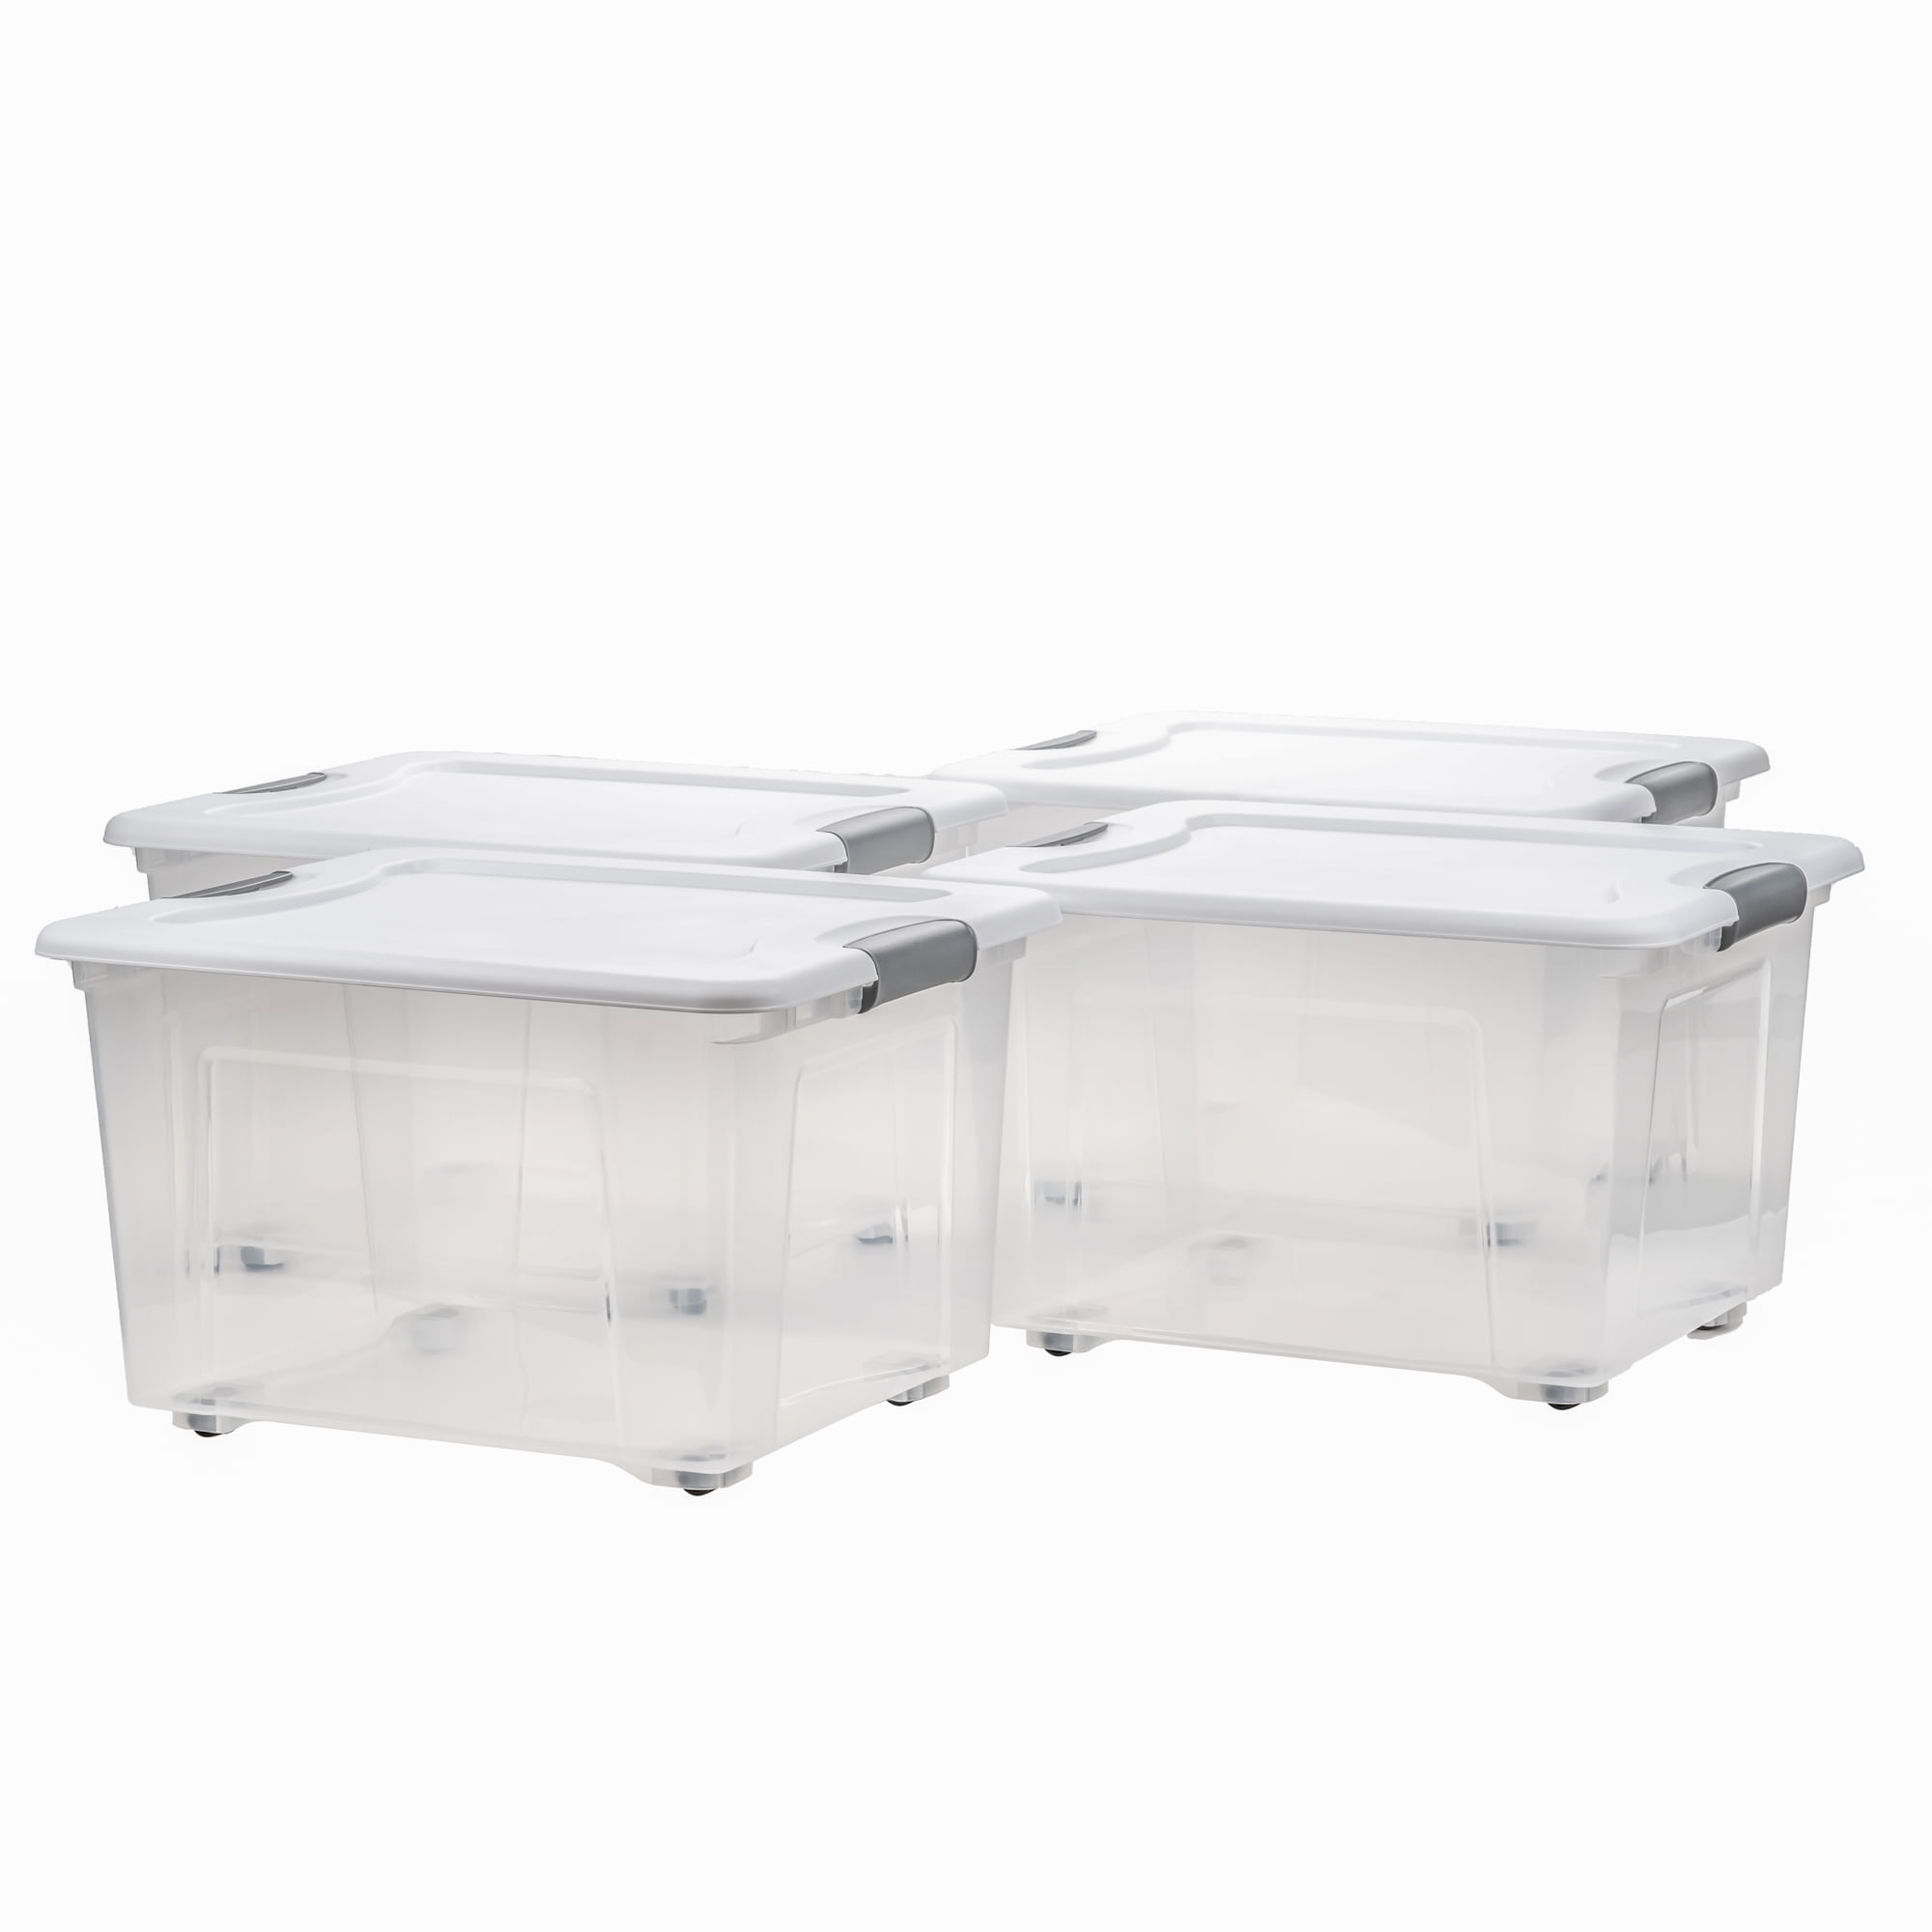 Sterilite 90 Qt. Storage Box Plastic, White